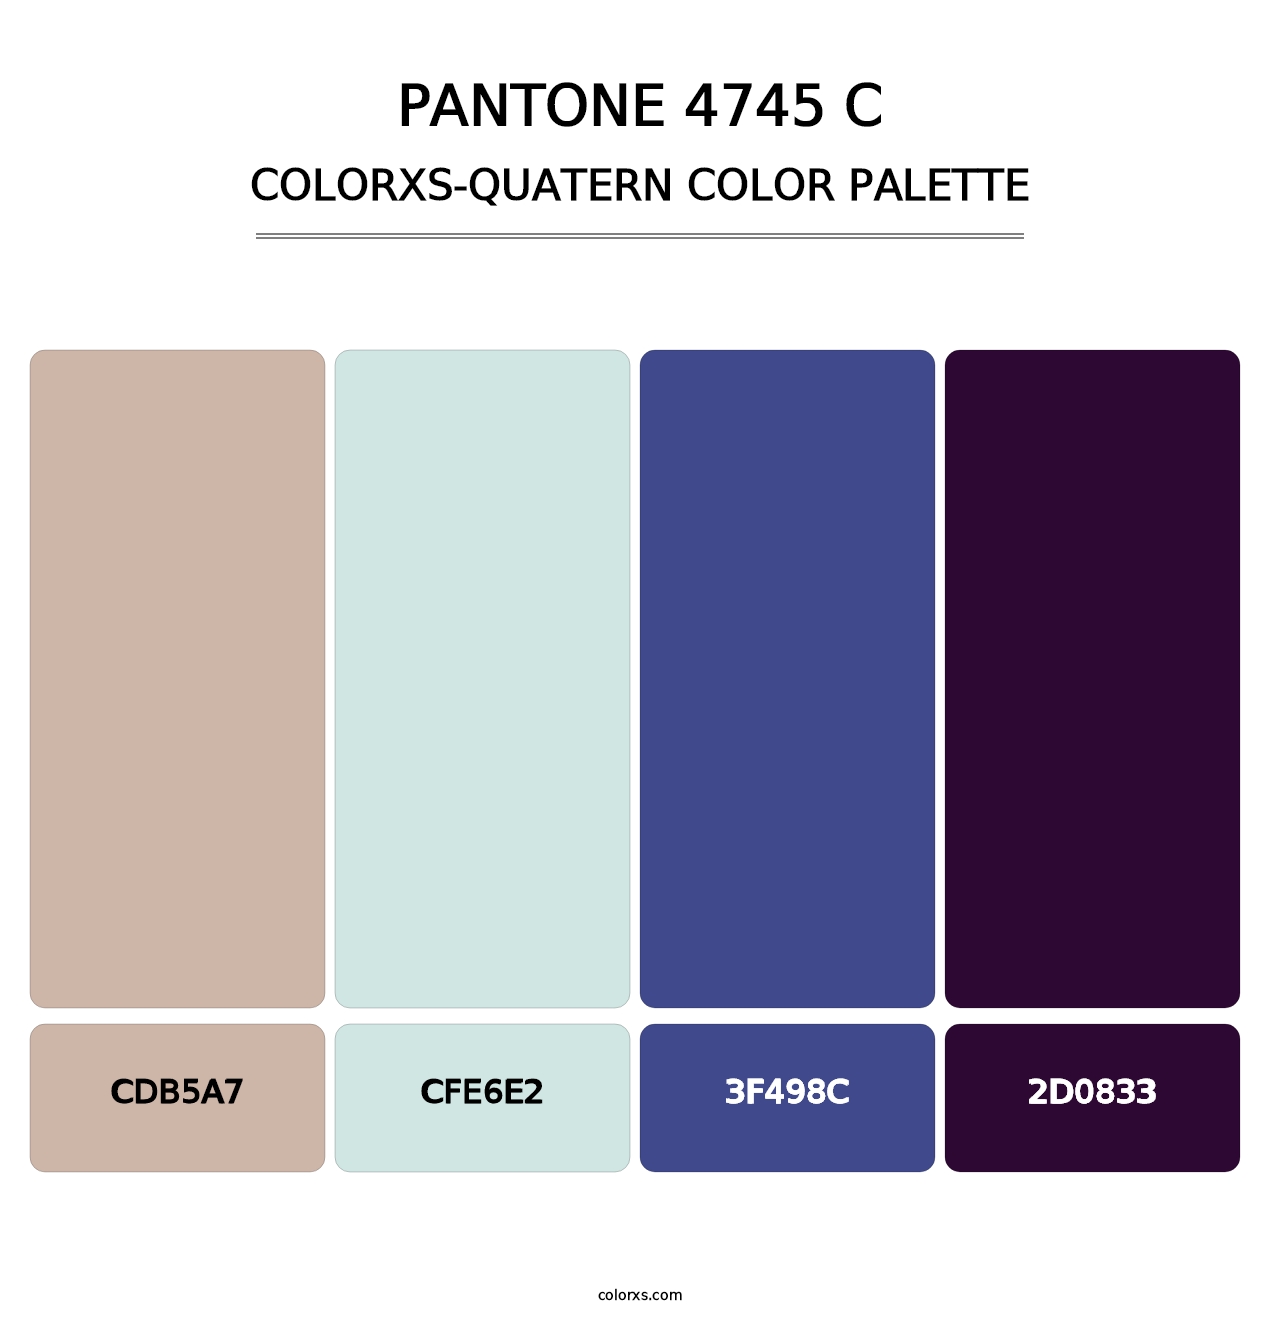 PANTONE 4745 C - Colorxs Quatern Palette